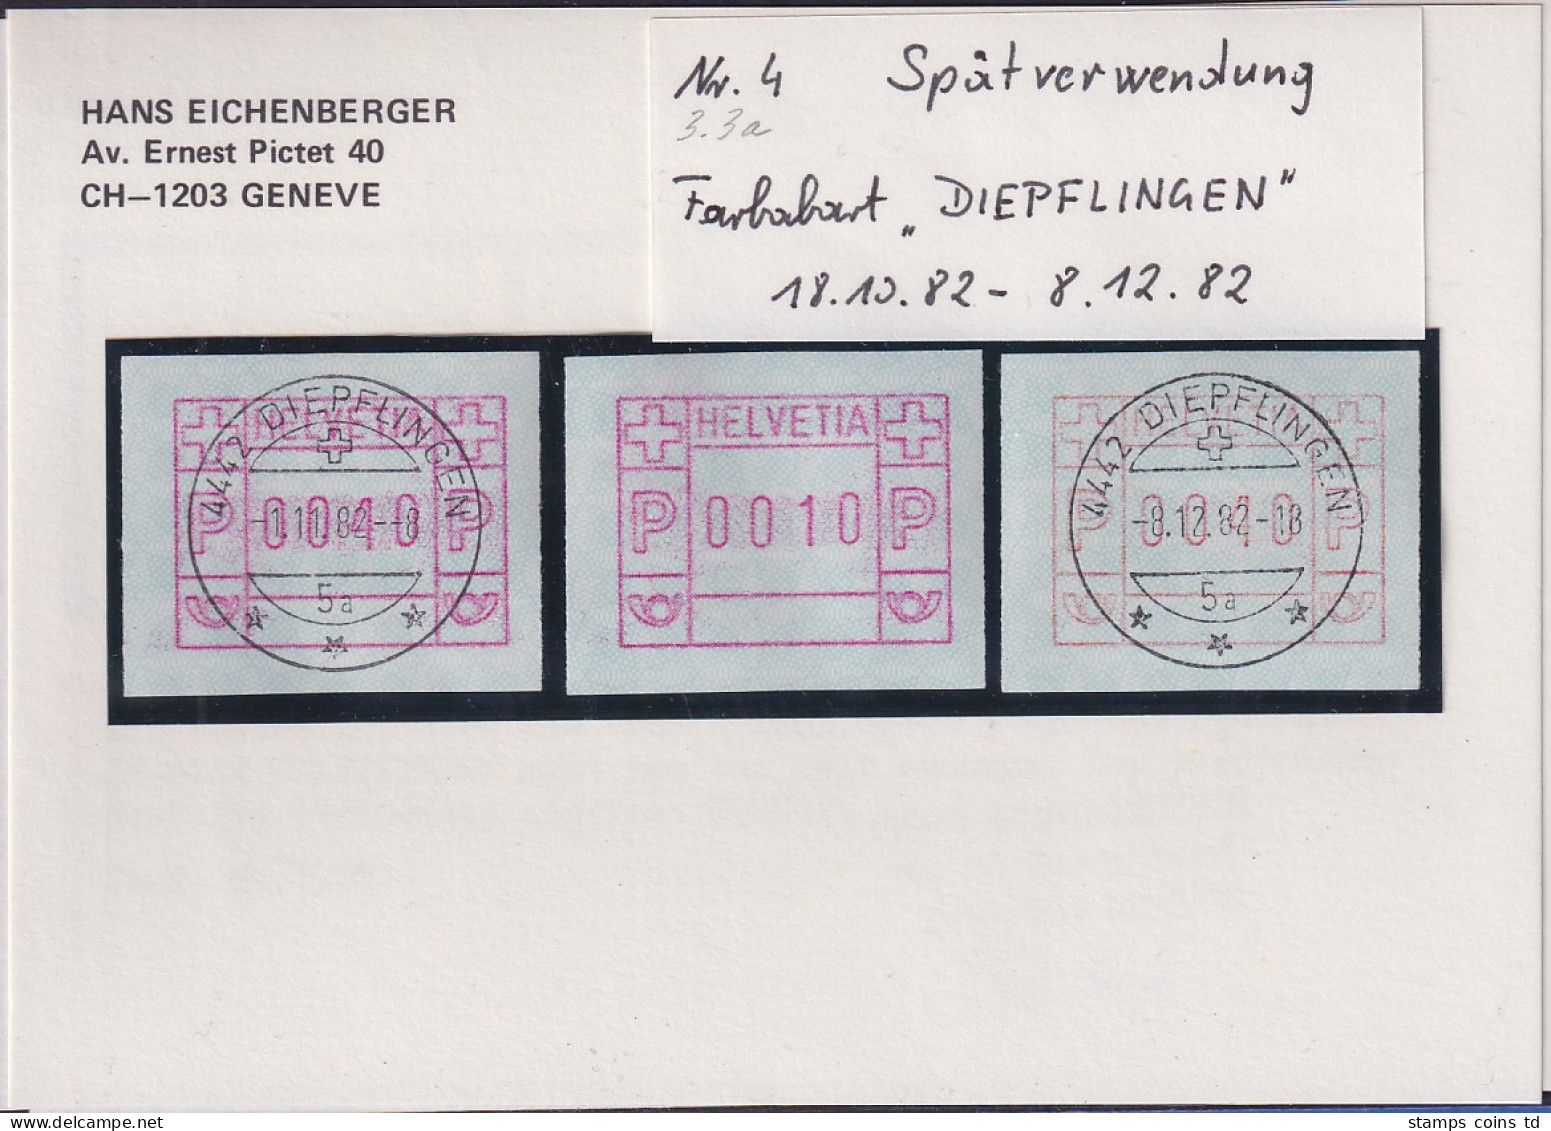 Schweiz FRAMA-ATM Mi-Nr. 3.3a Spätverwendung DIEPFLINGEN 18.10. Bis 8.12. 82  - Francobolli Da Distributore